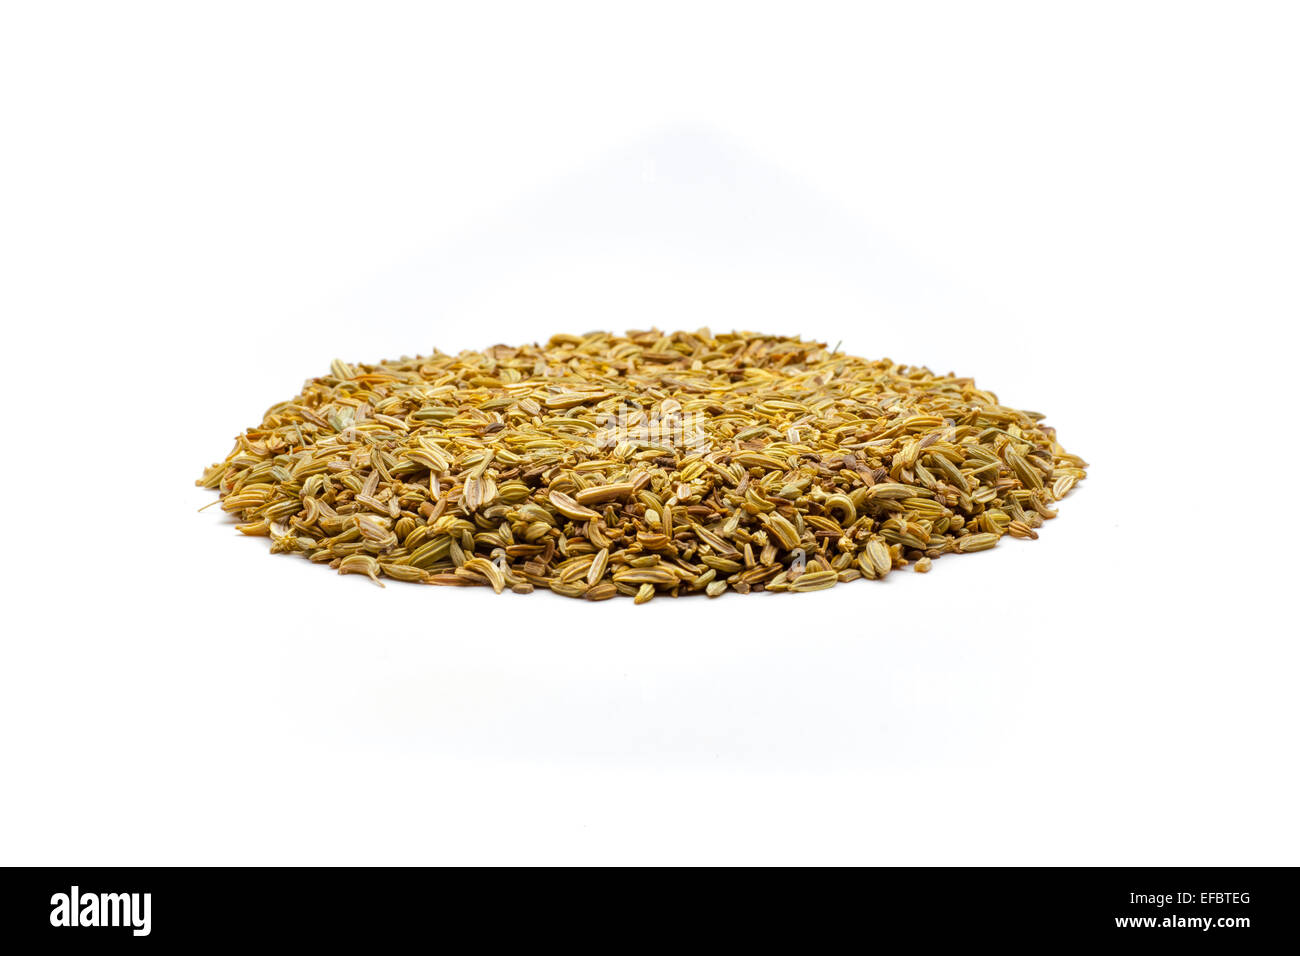 Pile of cumin seeds Stock Photo